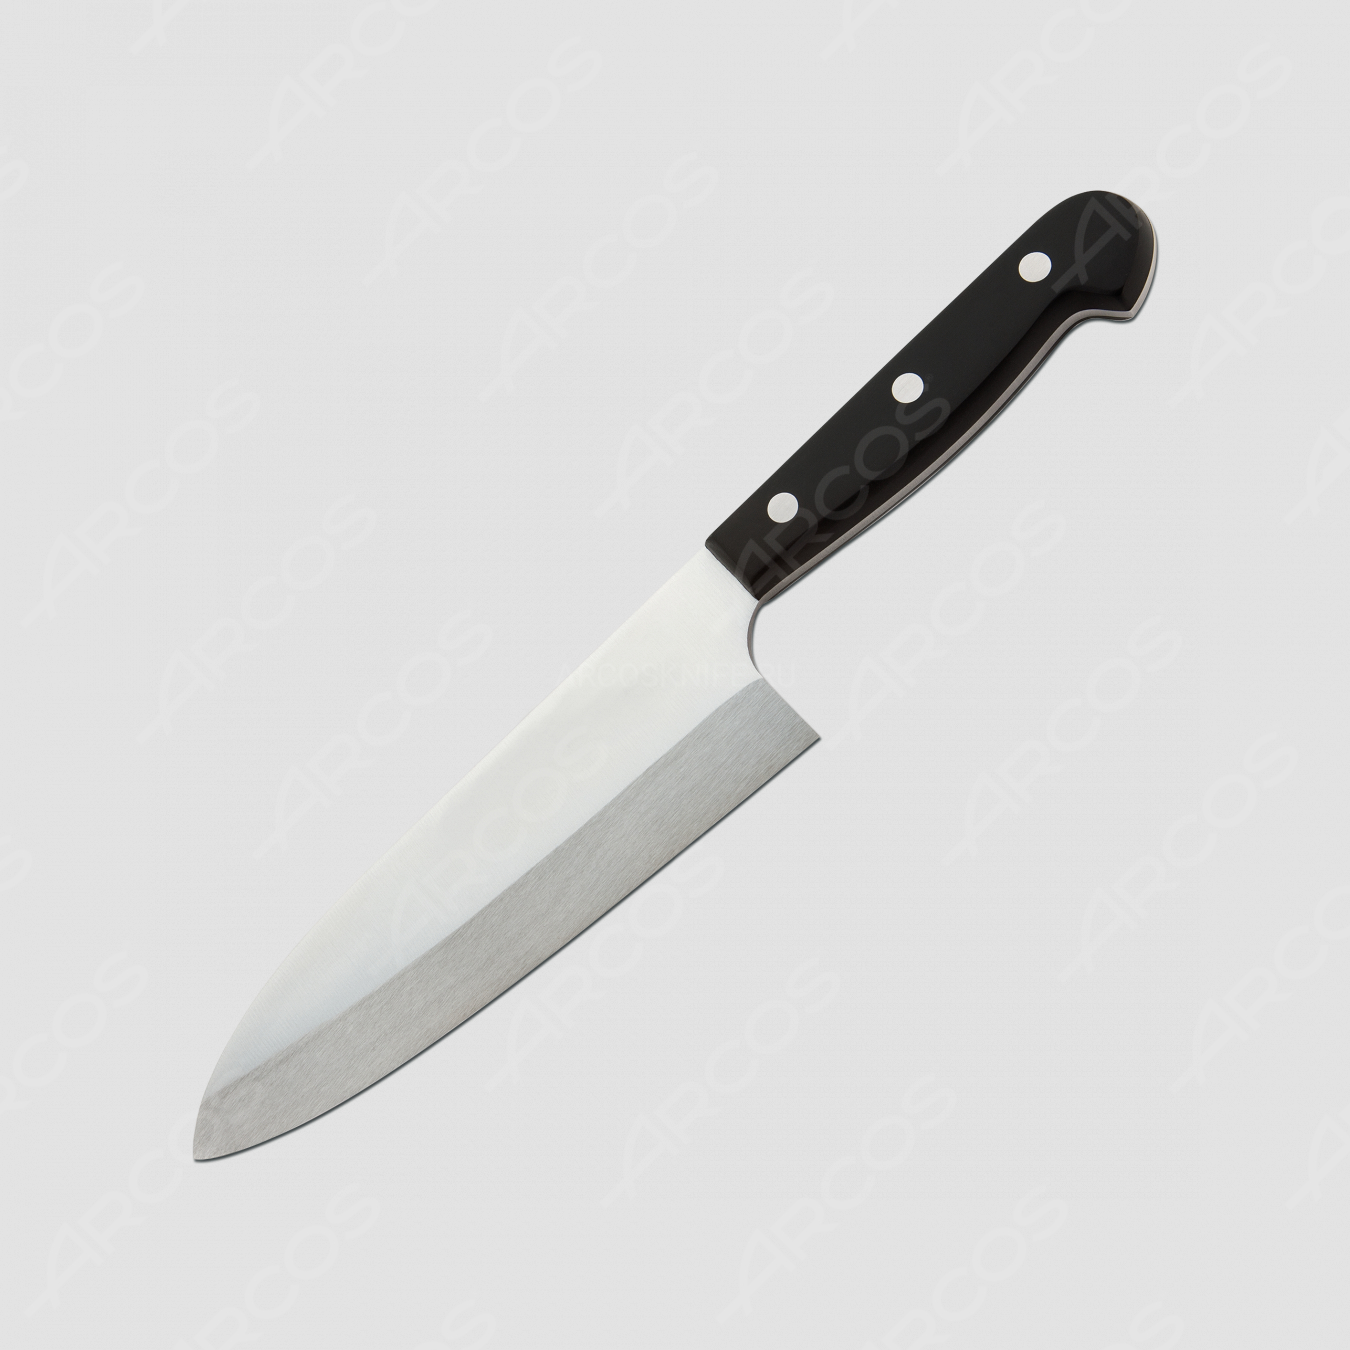 Кухонный нож Deba для разделки рыбы 17 см, серия Universal, ARCOS, Испания